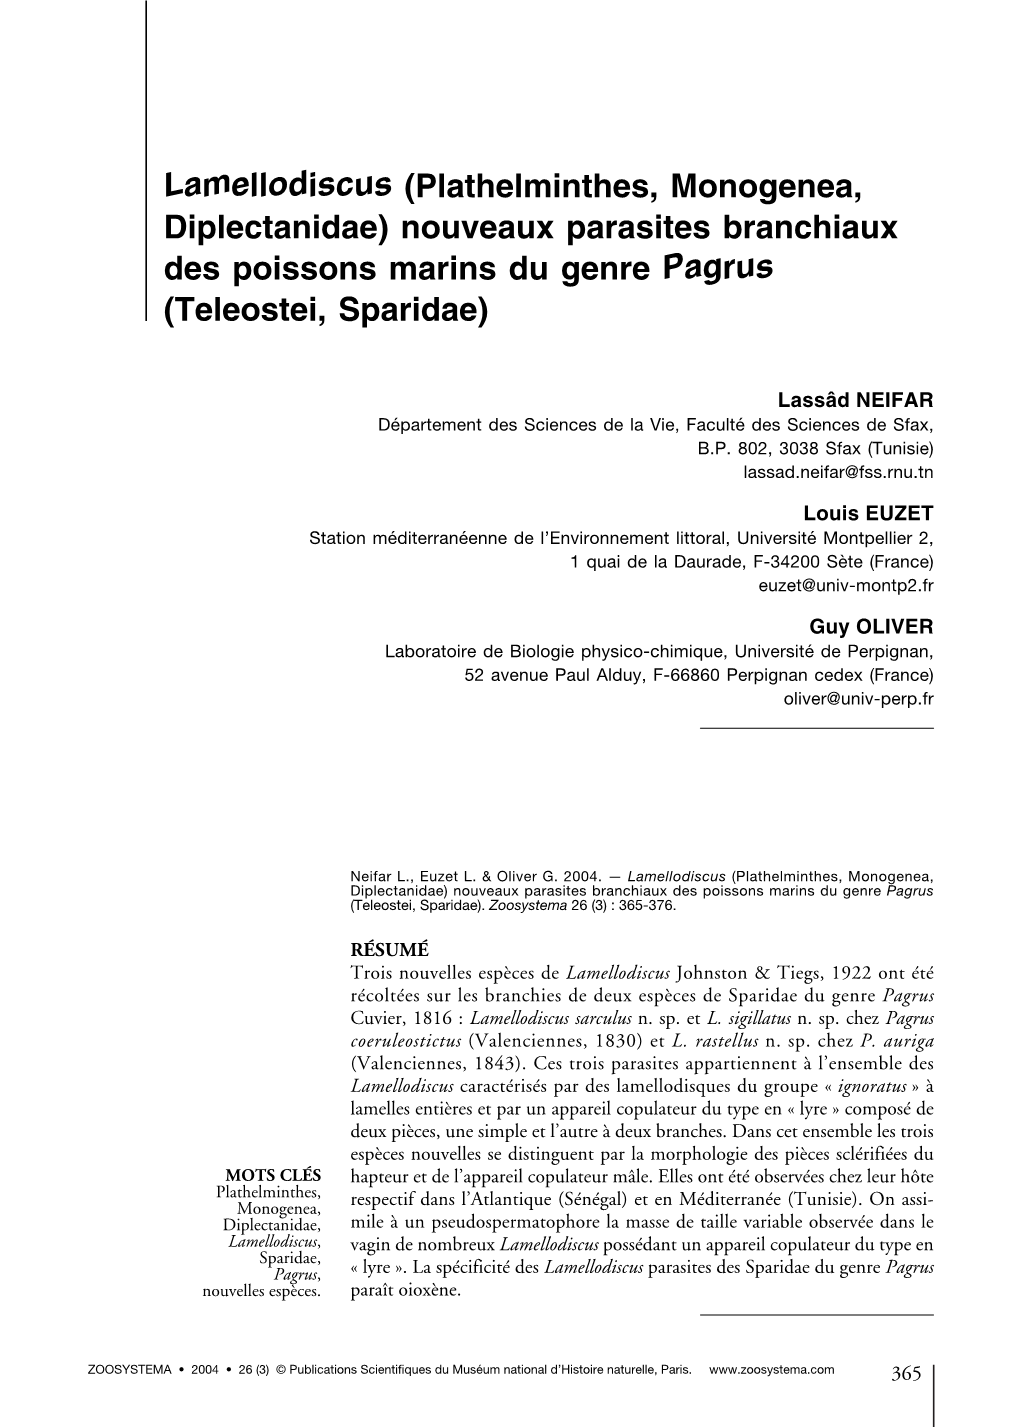 Lamellodiscus (Plathelminthes, Monogenea, Diplectanidae) Nouveaux Parasites Branchiaux Des Poissons Marins Du Genre Pagrus (Teleostei, Sparidae)